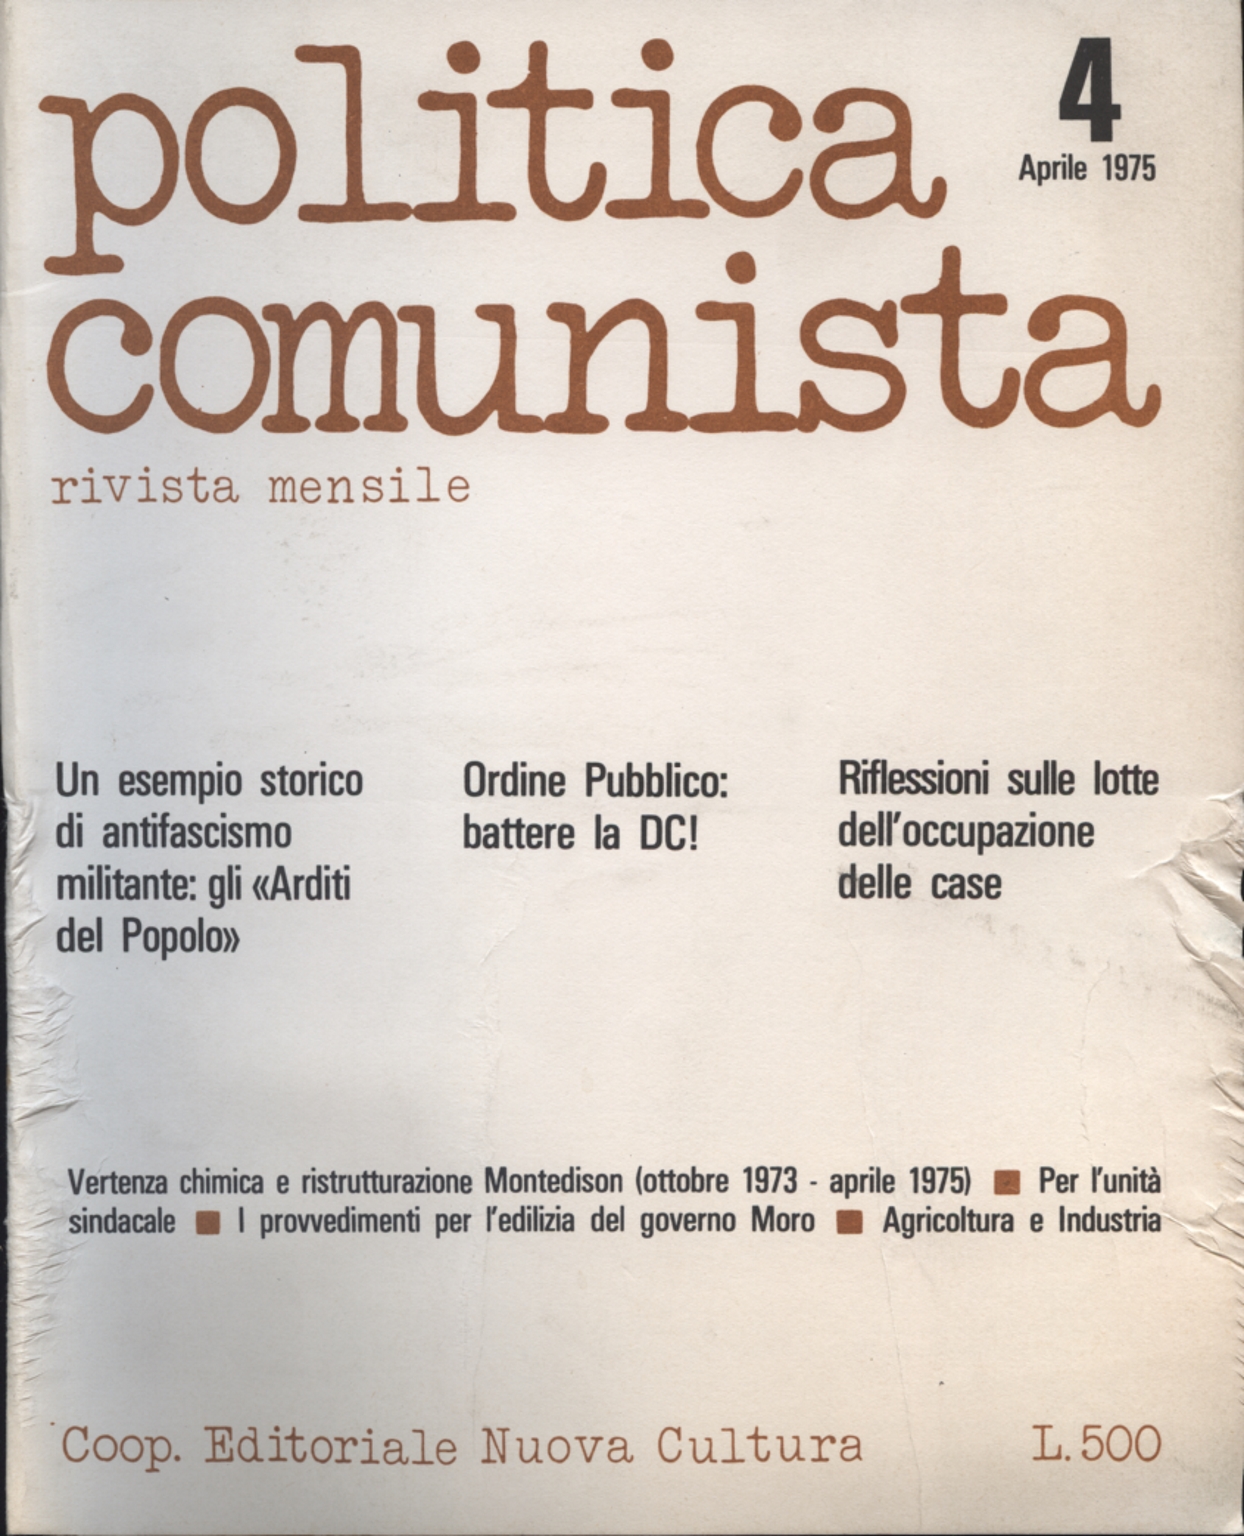 El político comunista no.4 de abril de 1975, AA.VV.